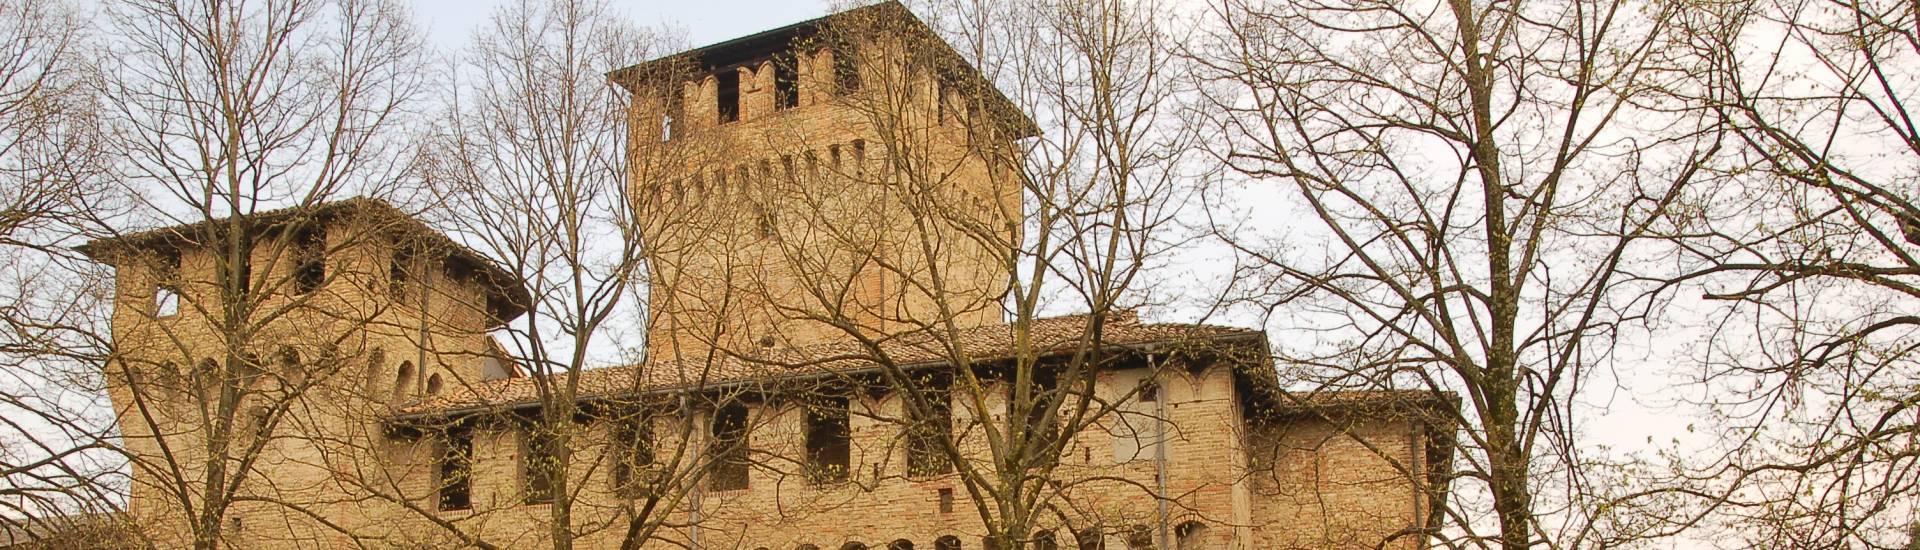 Rocca di Montecchio Emilia - Castello foto di: |Comune di Montecchio Emilia| - Comune di Montecchio Emilia